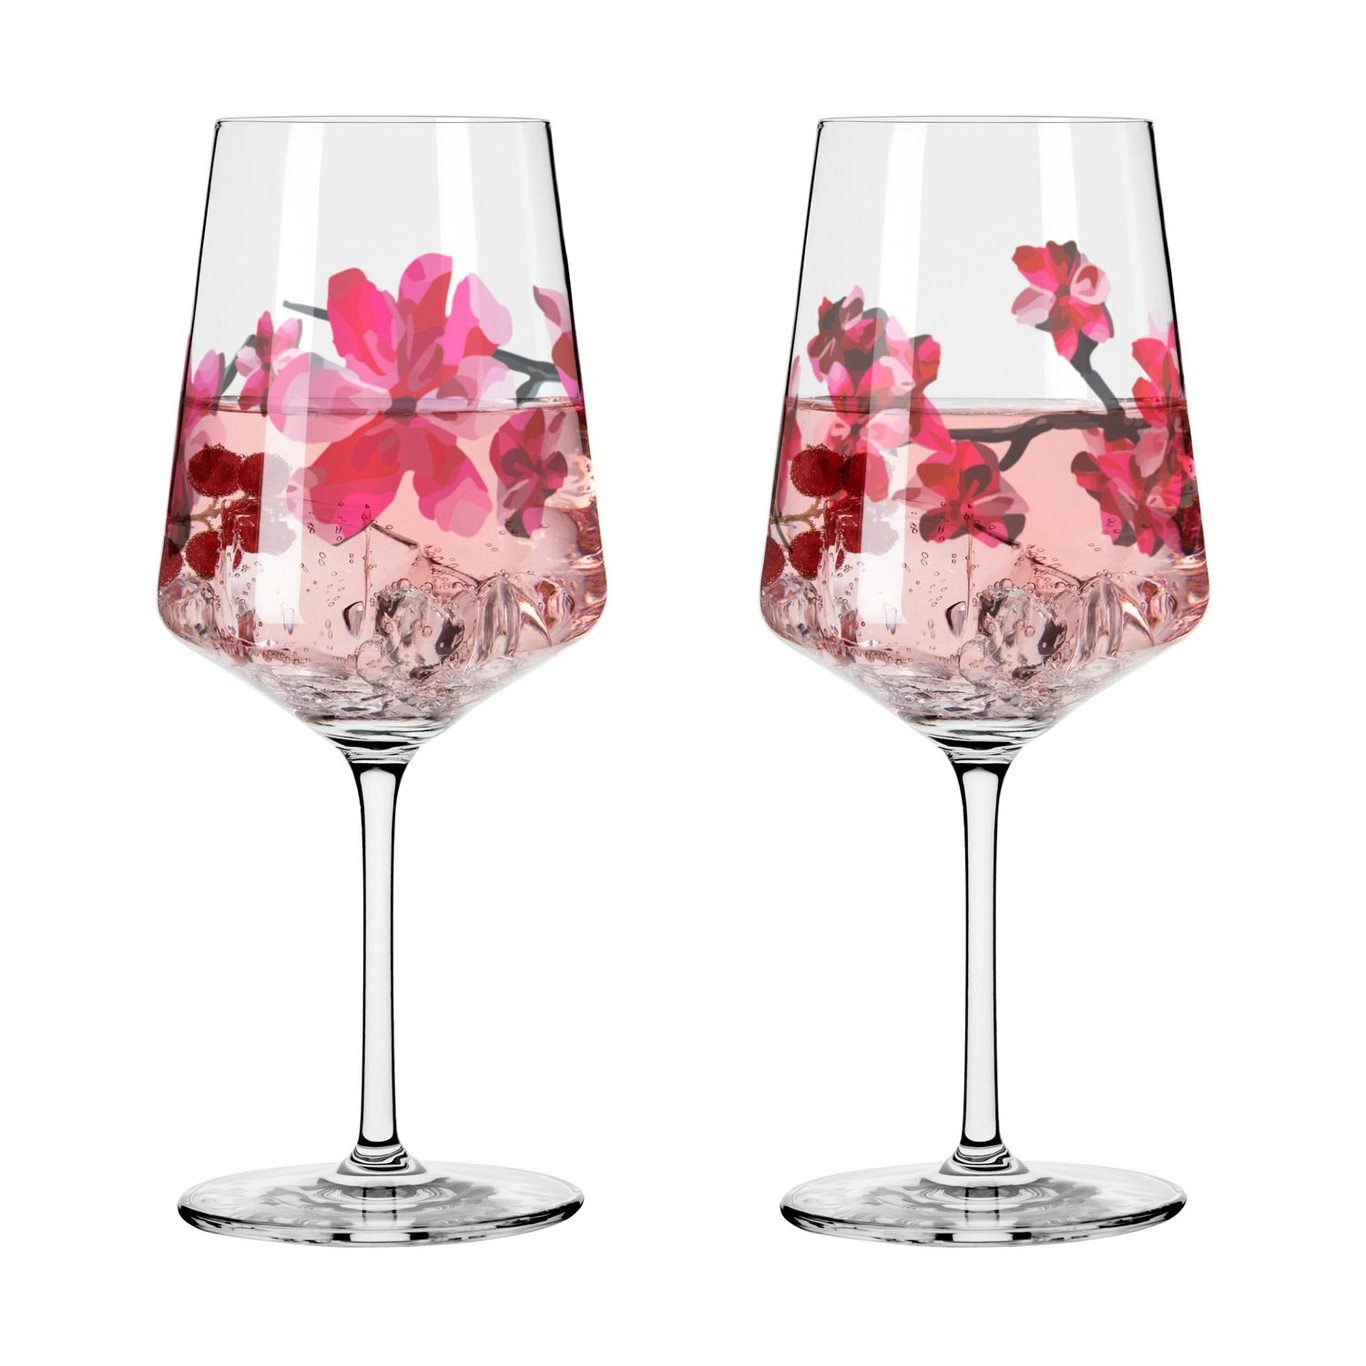 Sommersonett Wine Glasses 2-pack, #11 & 12